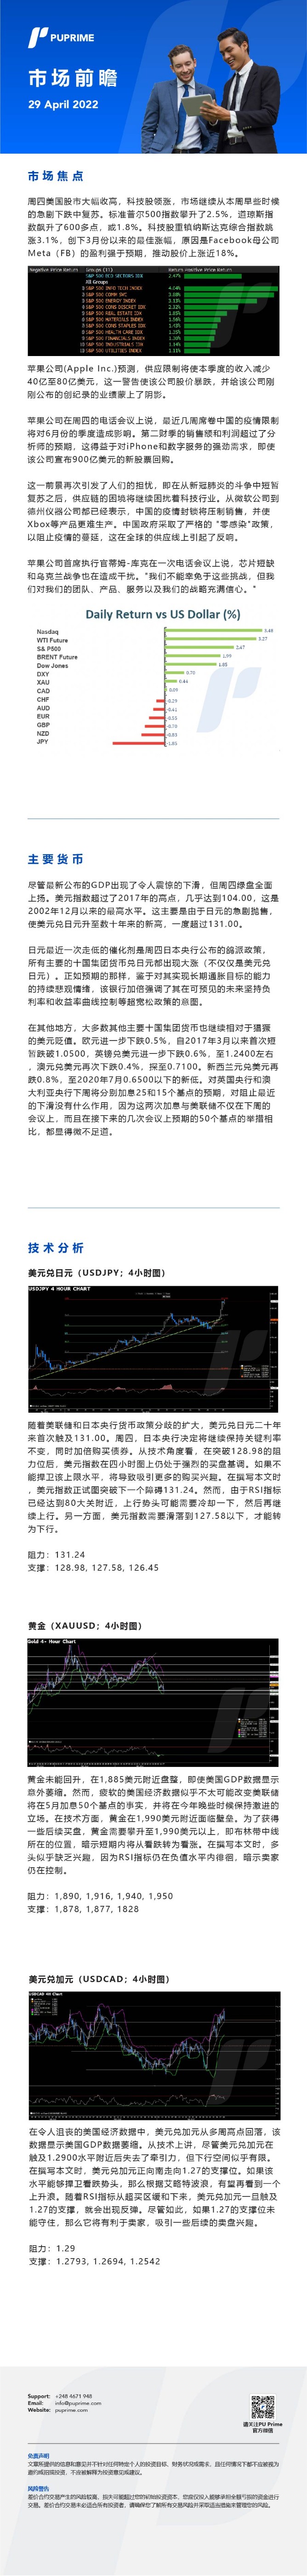 29042022 Daily Market Analysis__CHN.jpg